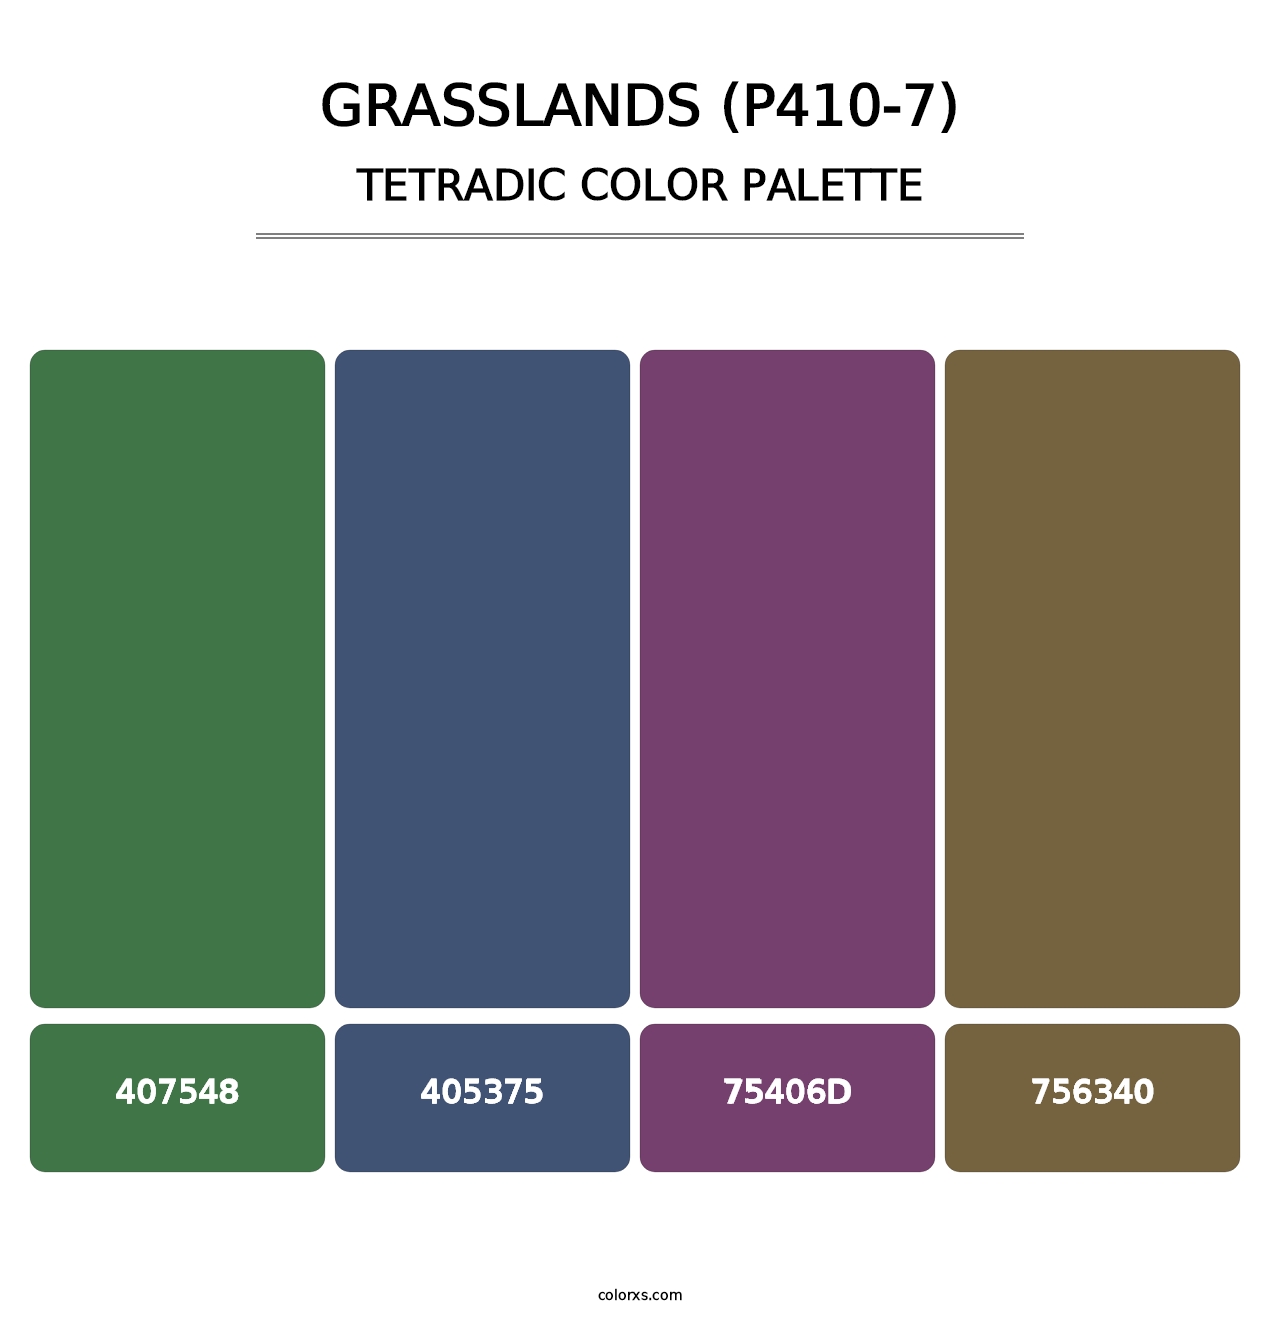 Grasslands (P410-7) - Tetradic Color Palette